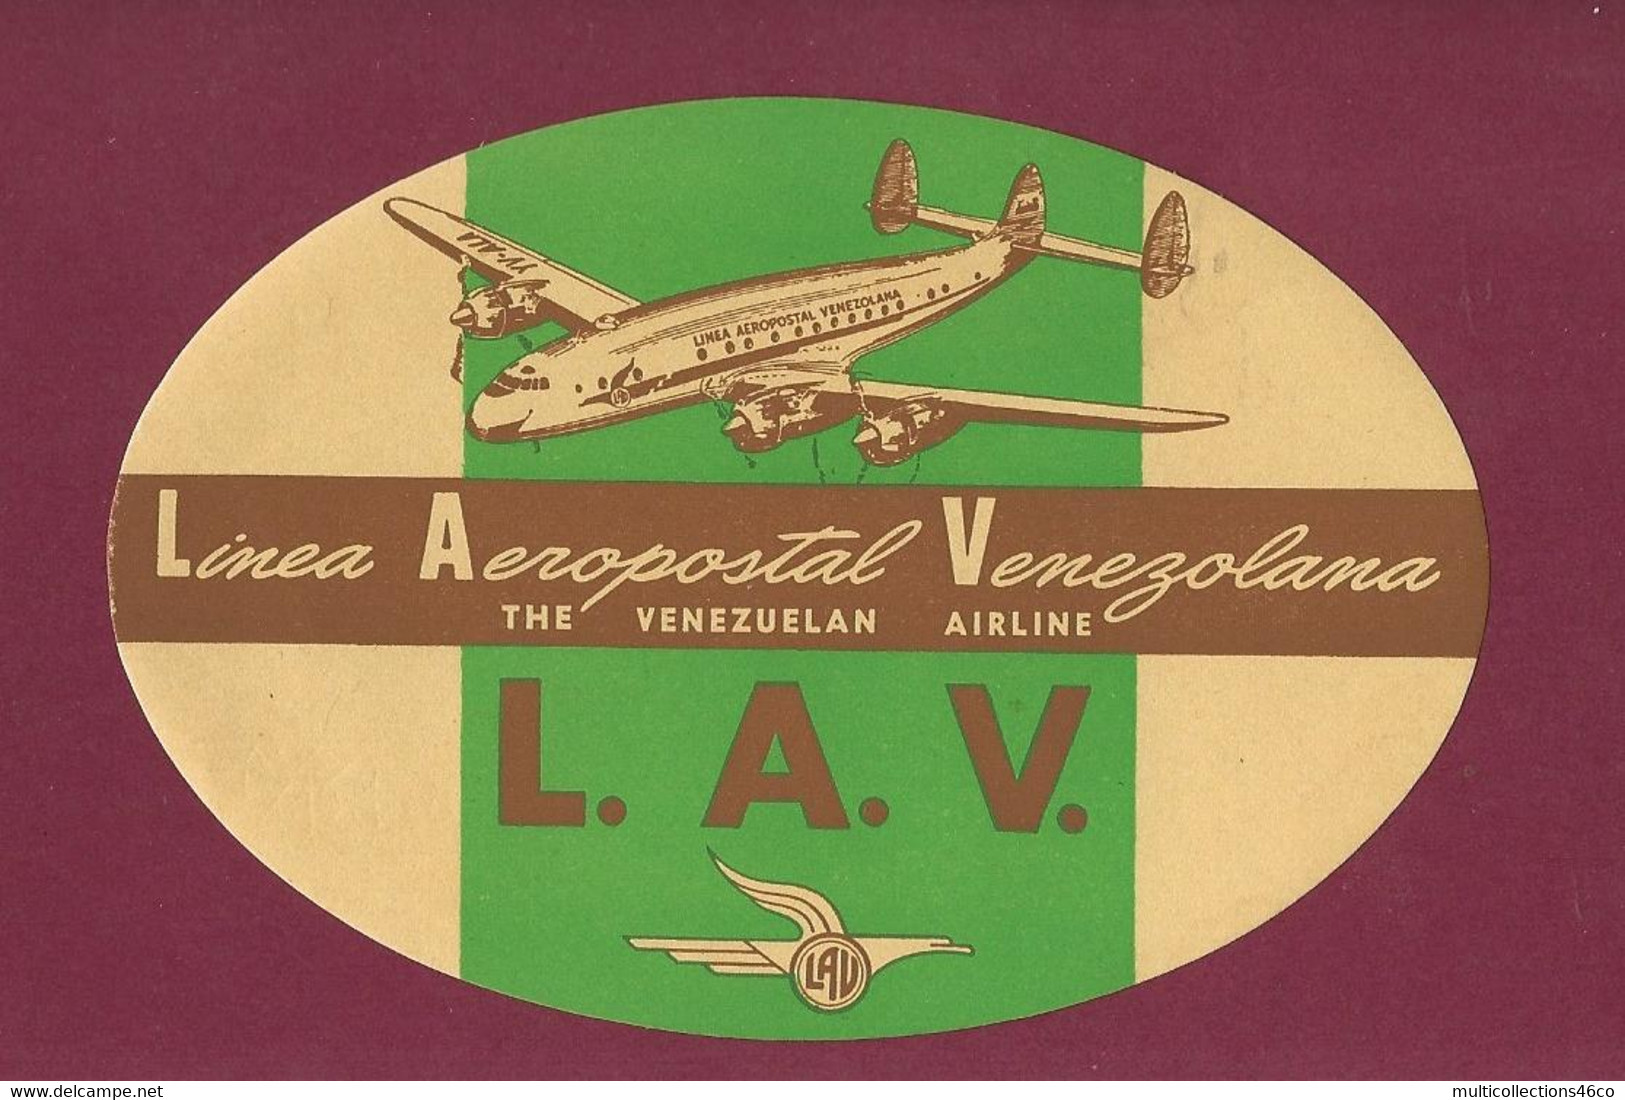 060922 - AVIATION ETIQUETTE A BAGAGE LAV Linea Aeropostal Venezolana THE VENEZUELAN AIRLINE Avion - Aufklebschilder Und Gepäckbeschriftung